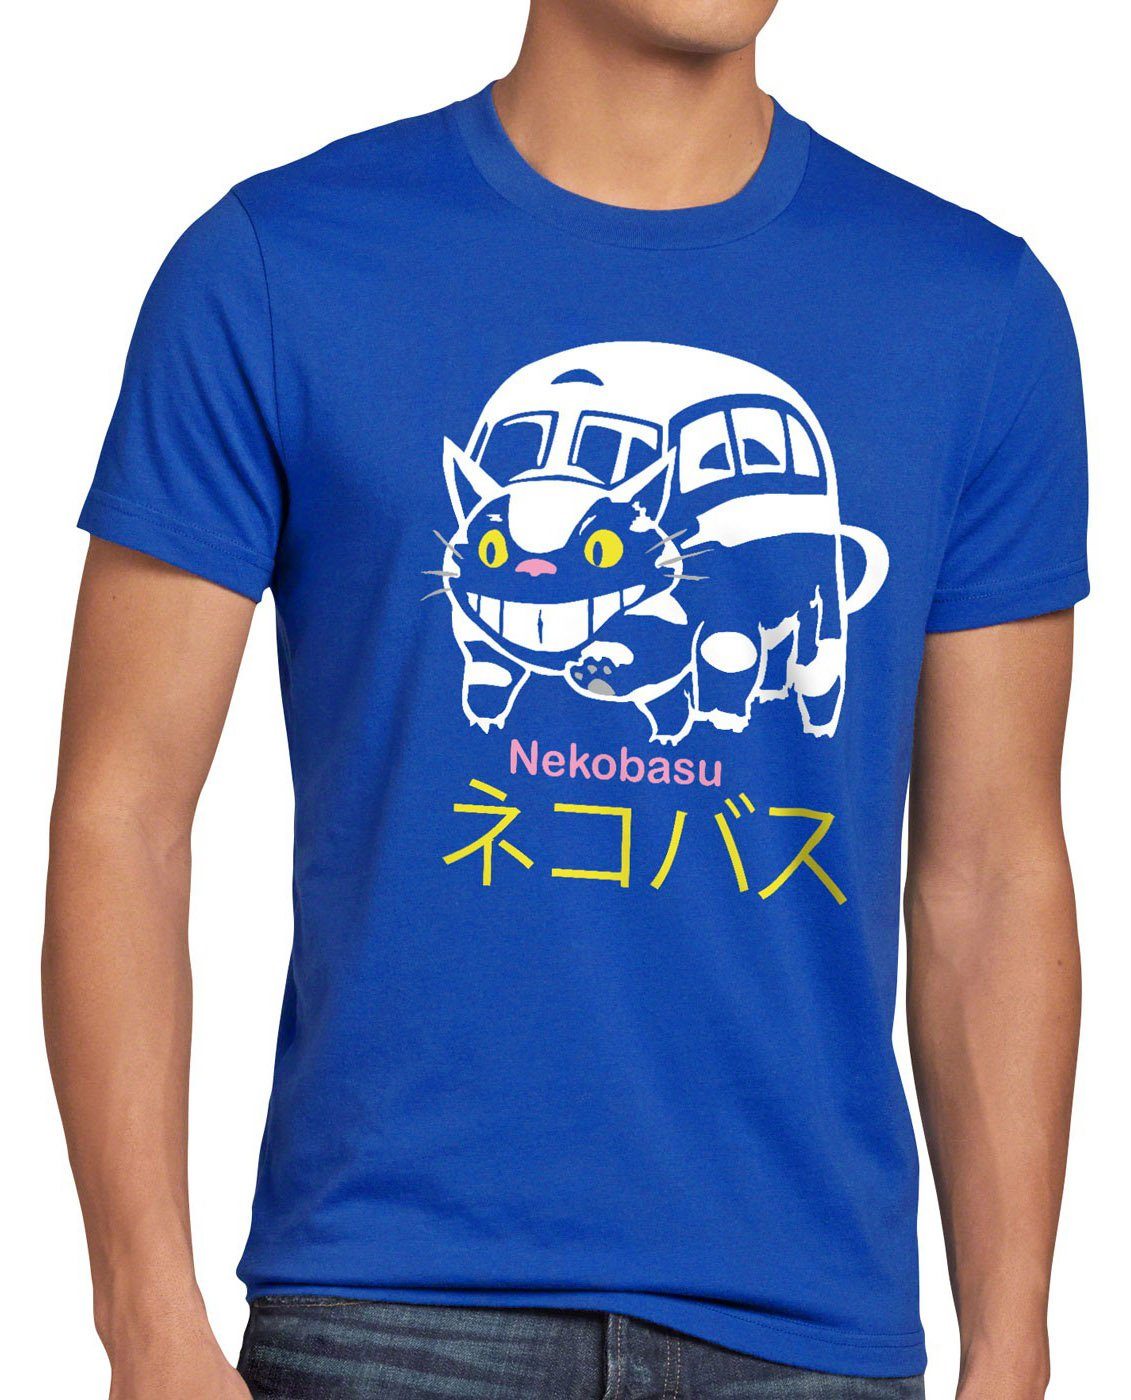 Katze Herren Ghibli Totoro Studio Katzenbus blau Tonarino Mein Bus Nachbar style3 T-Shirt Print-Shirt